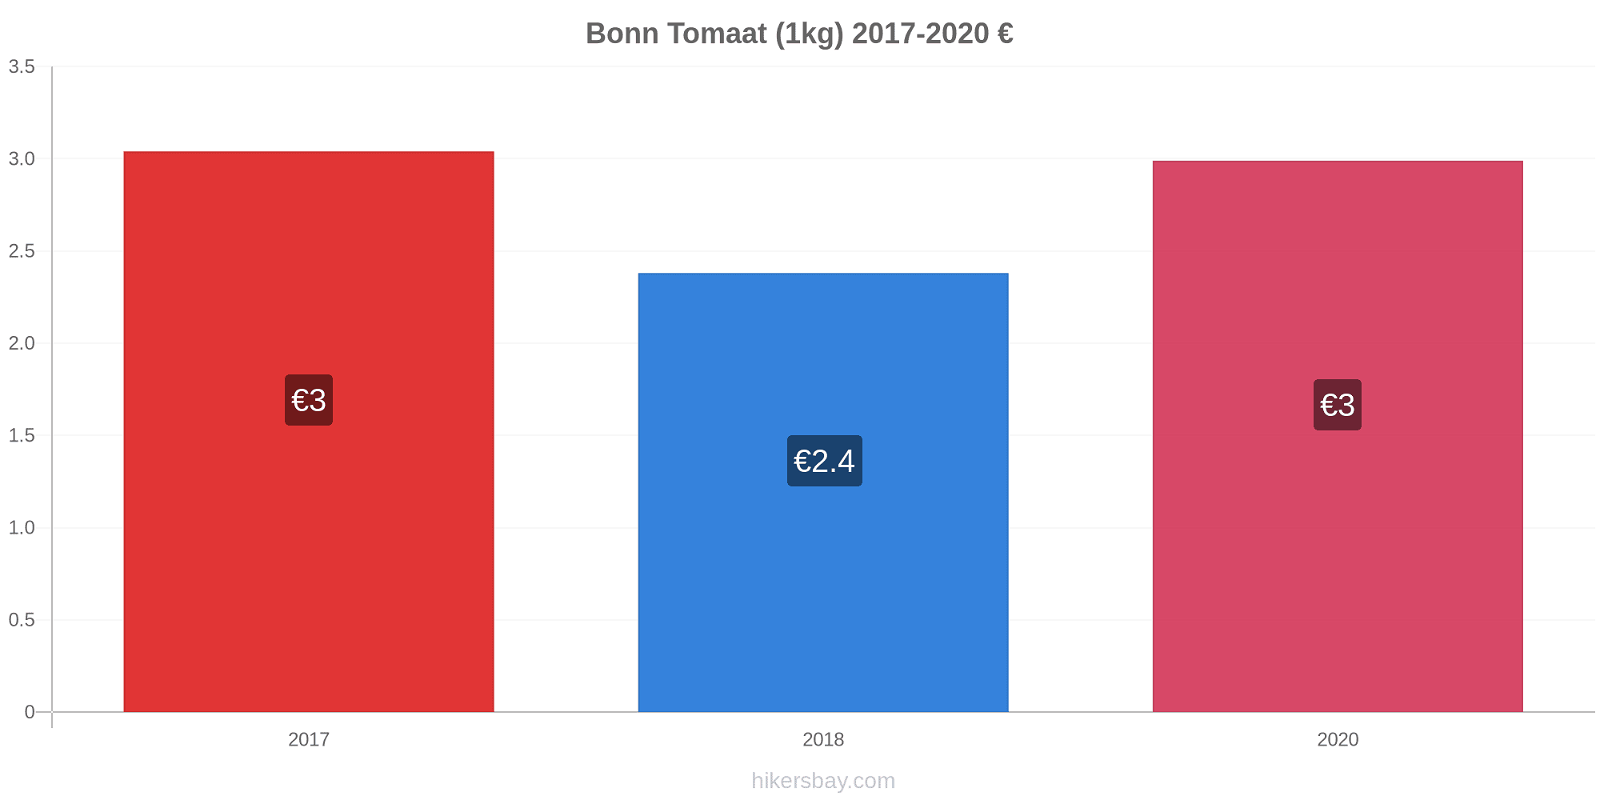 Bonn prijswijzigingen Tomaat (1kg) hikersbay.com